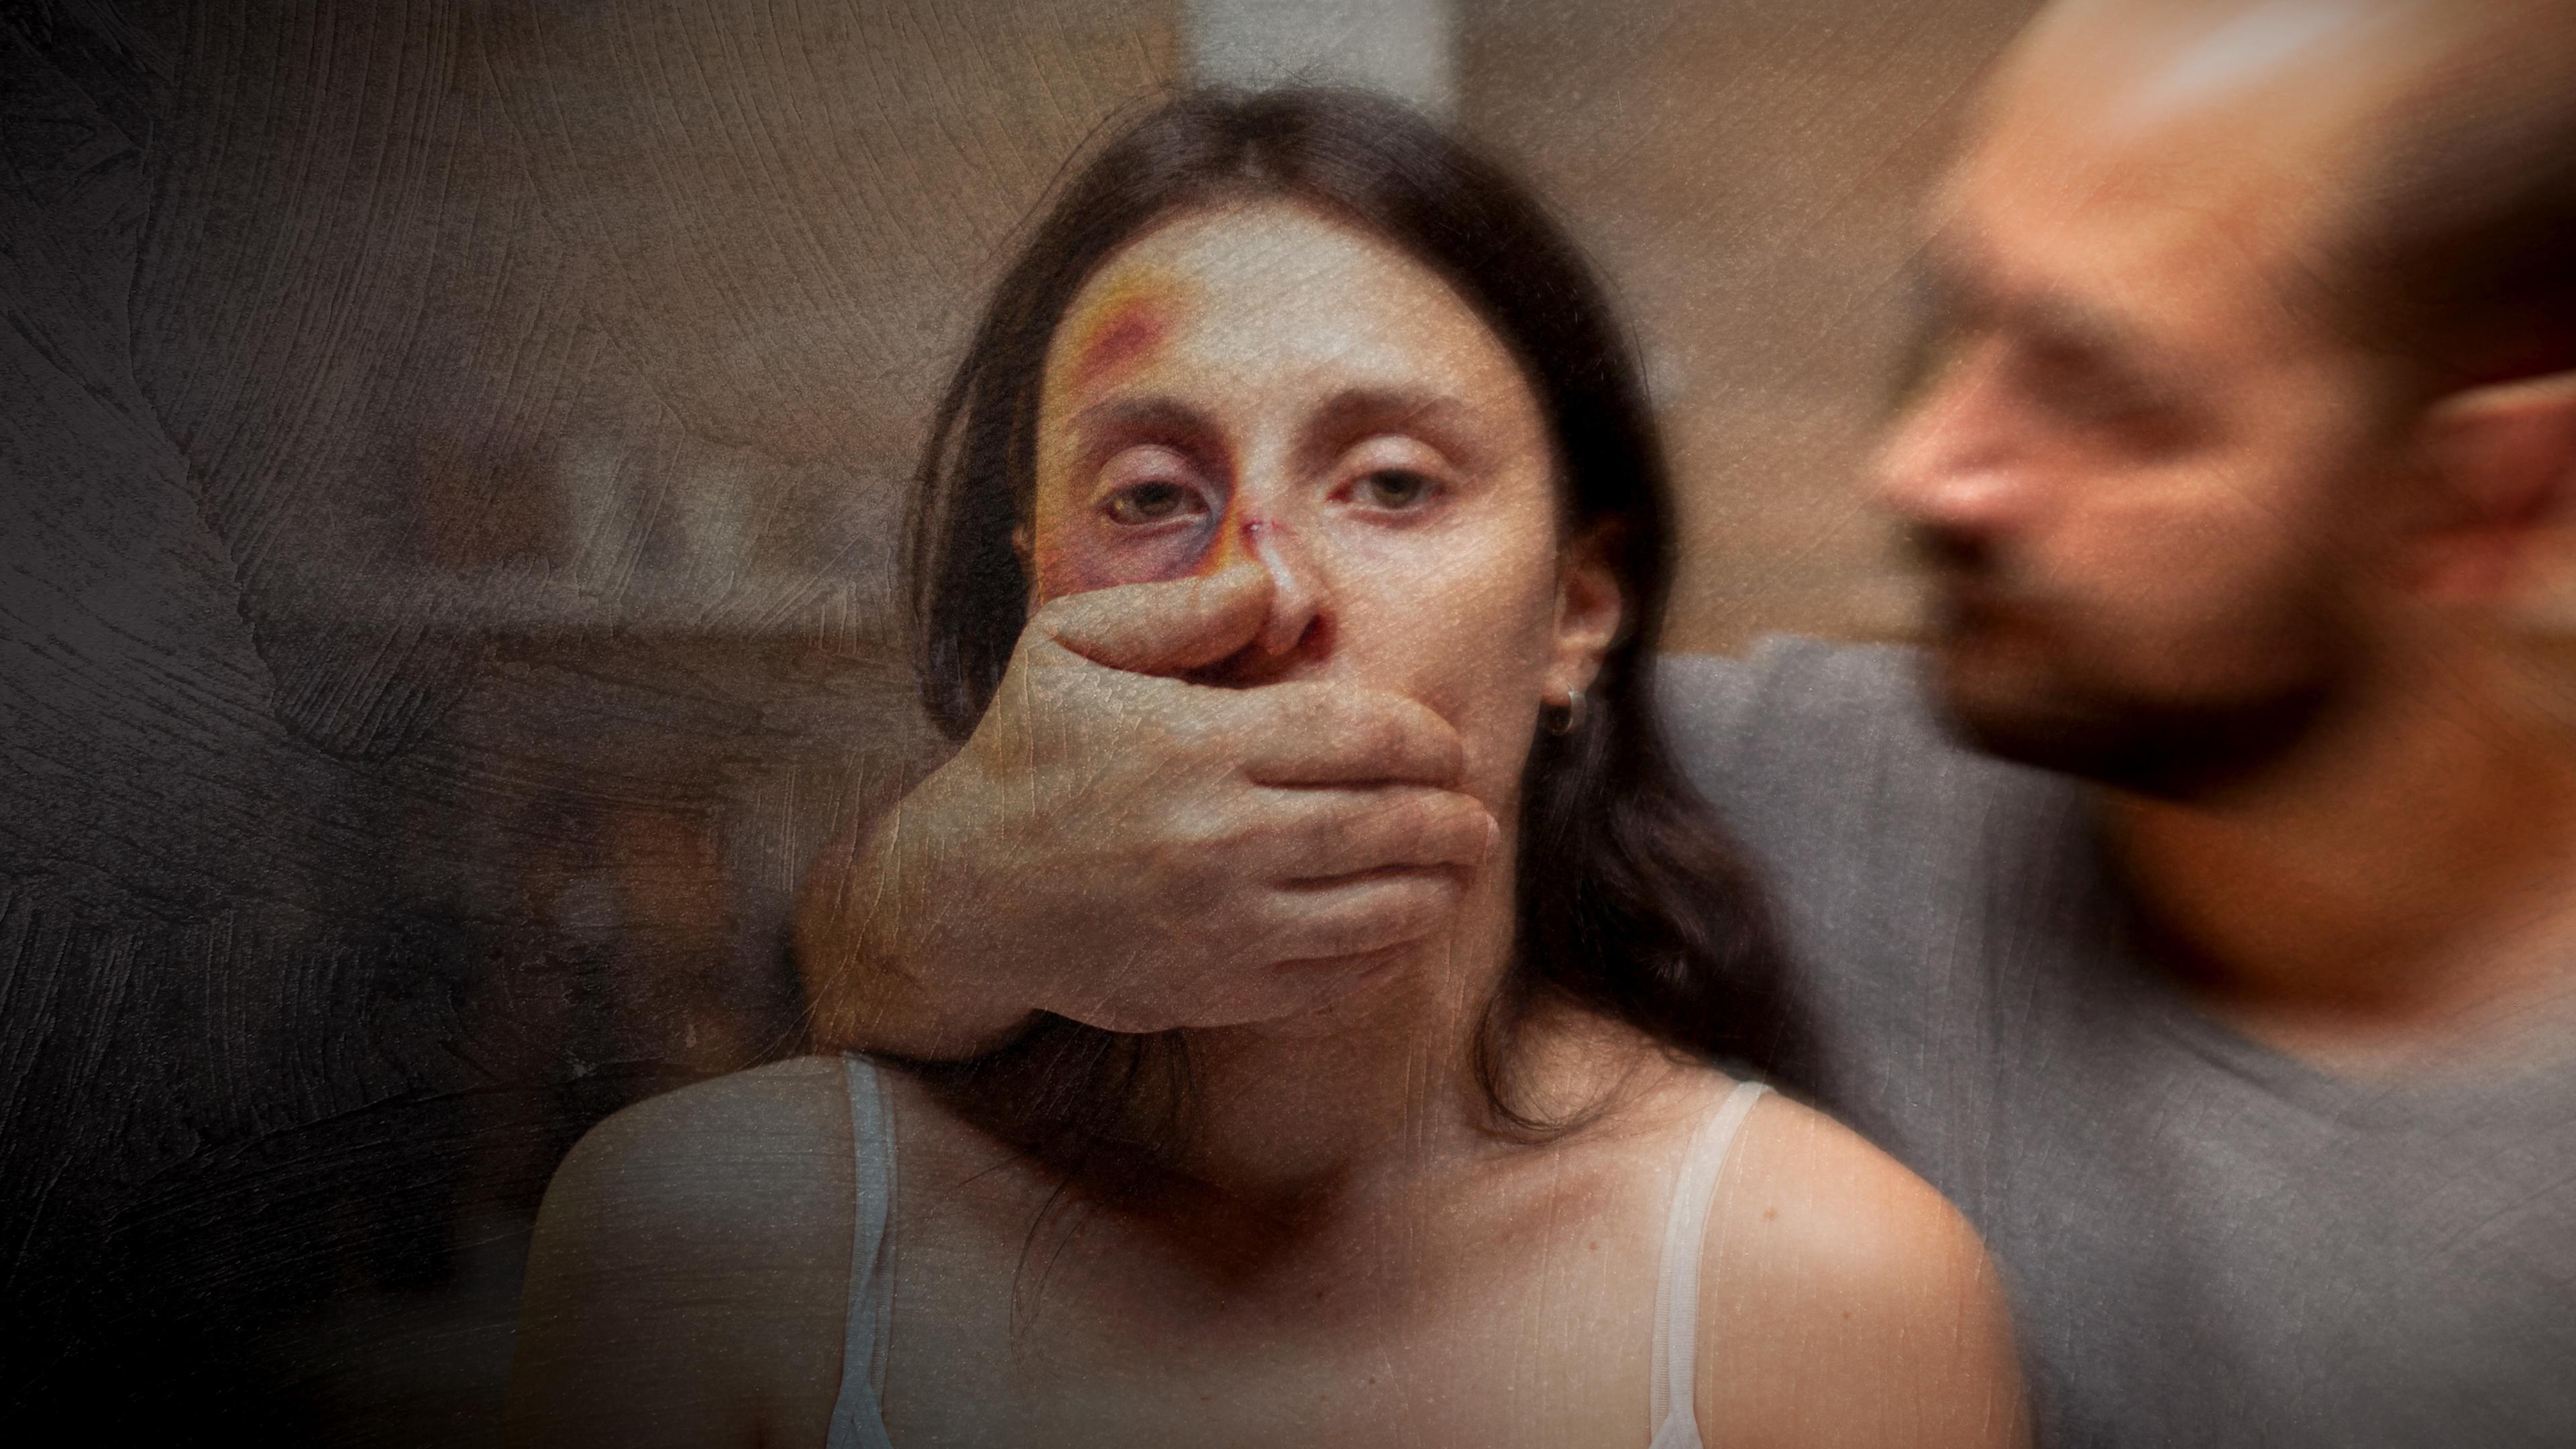 Eine Frau mit sichtbaren Verletzungen im Gesicht, ein Mann steht neben ihr und hält ihr den Mund zu.